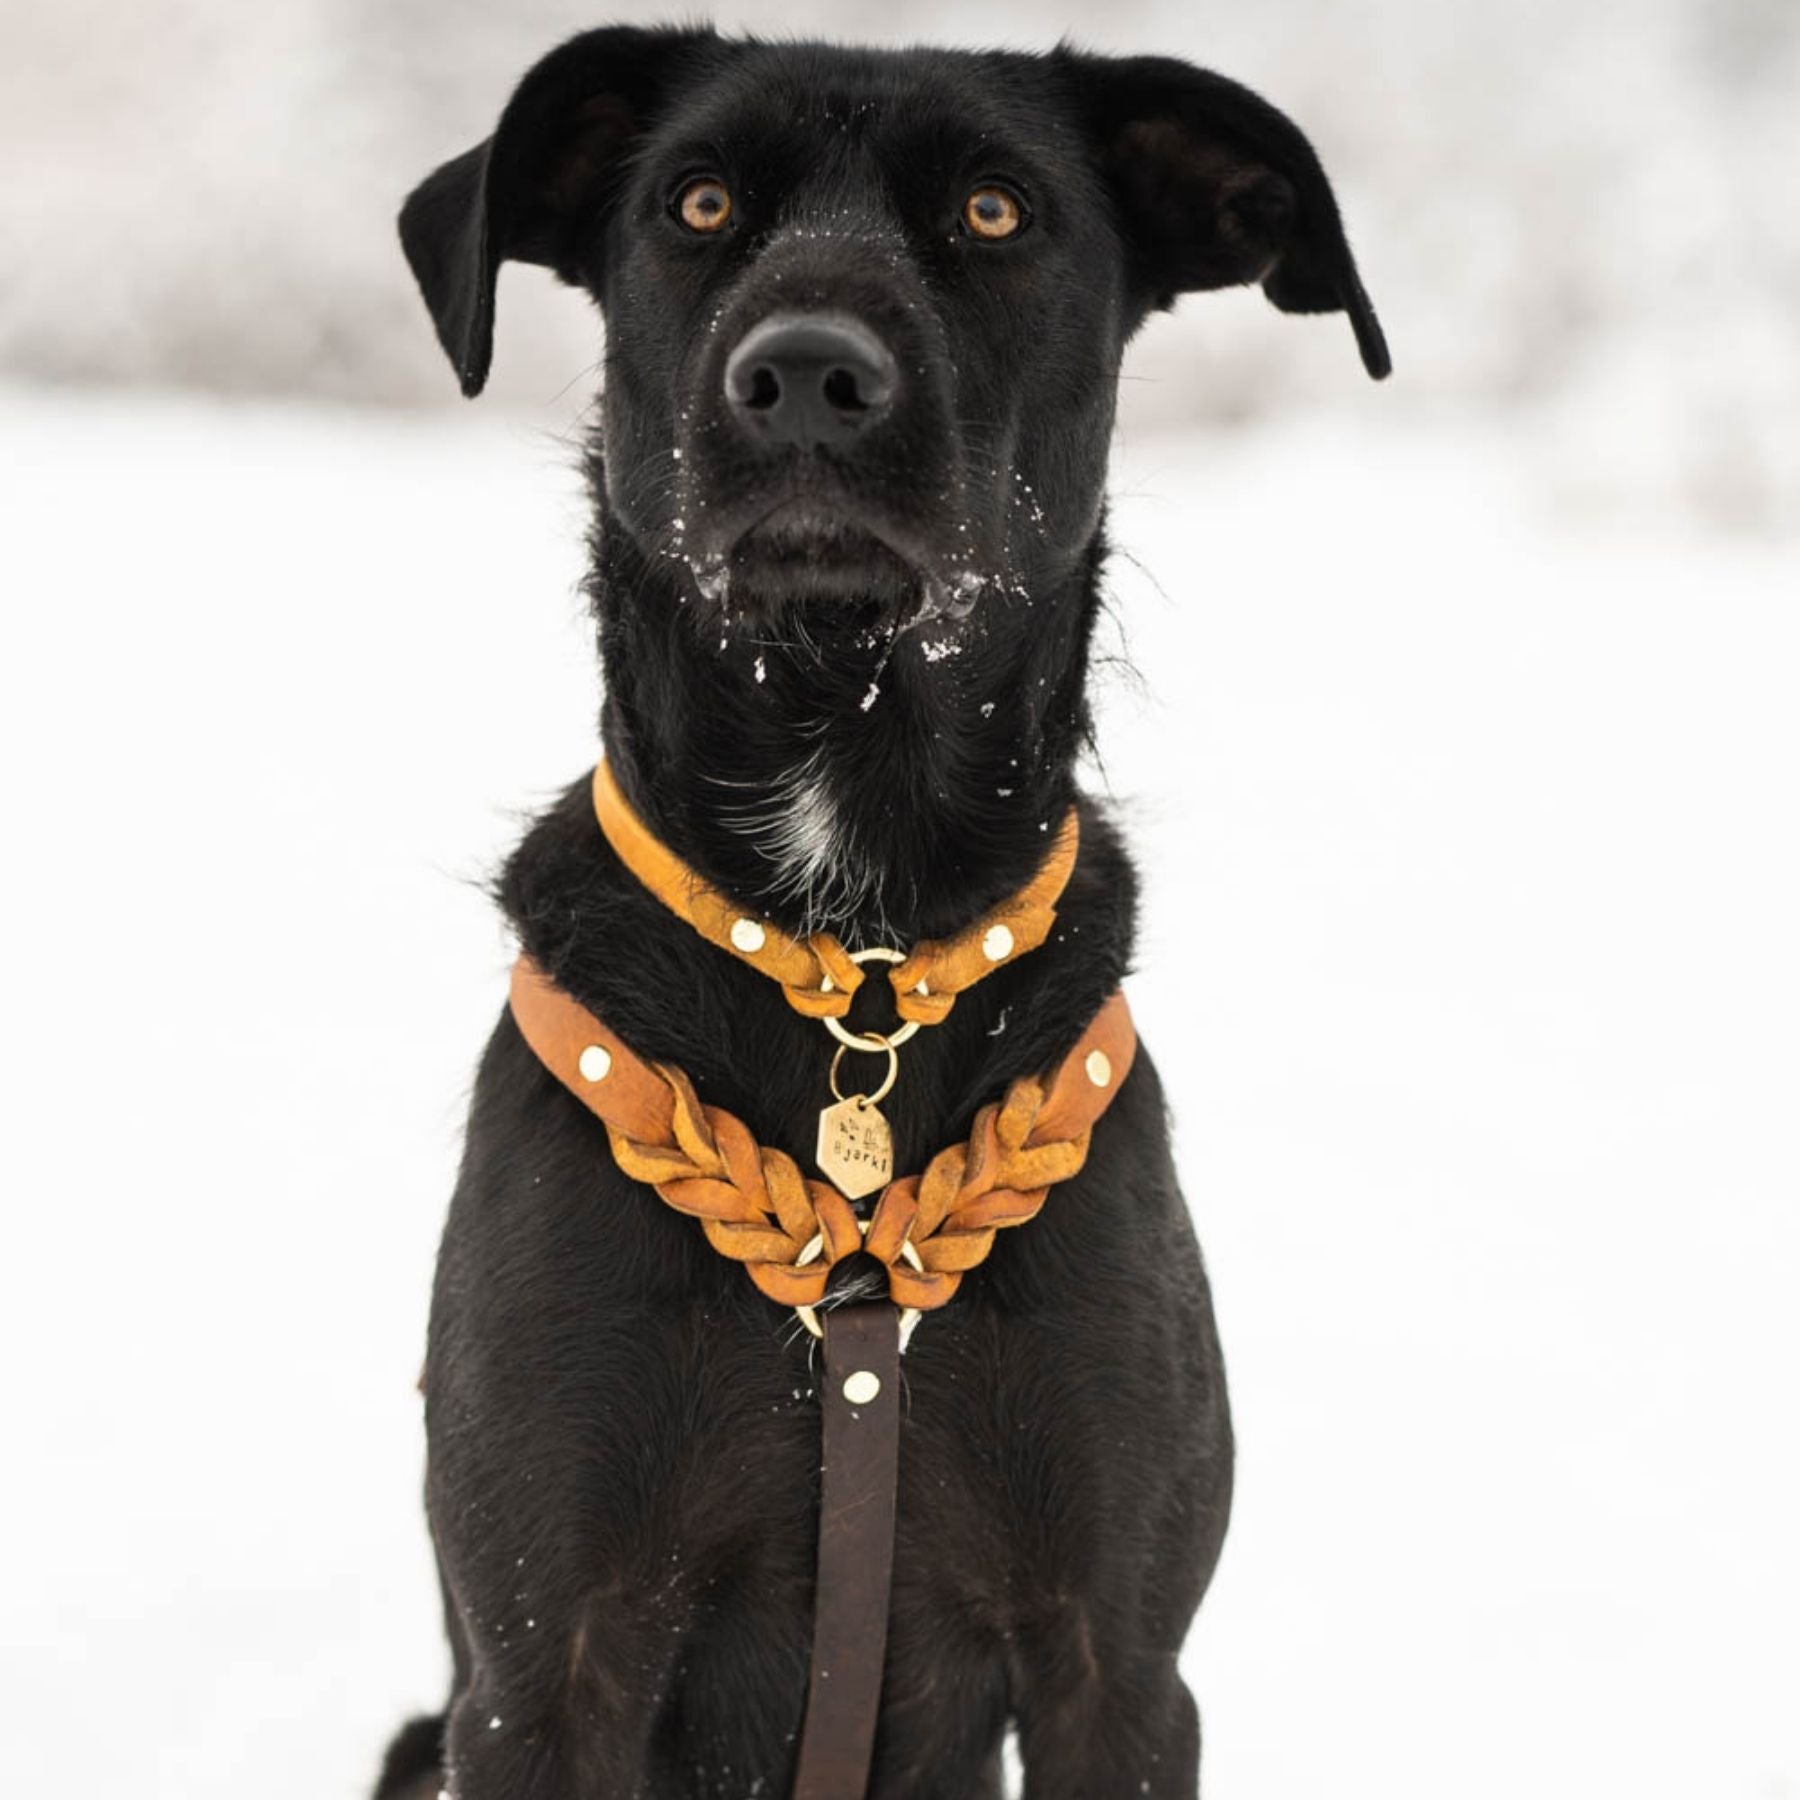 Markenhalsband für Hundemarken, dünnes Halsband für Hundemarken mit Handynummer und Namen, Ledermarkenhalsband, handgefertigt in Wien, Hundezubehör aus Österreich.